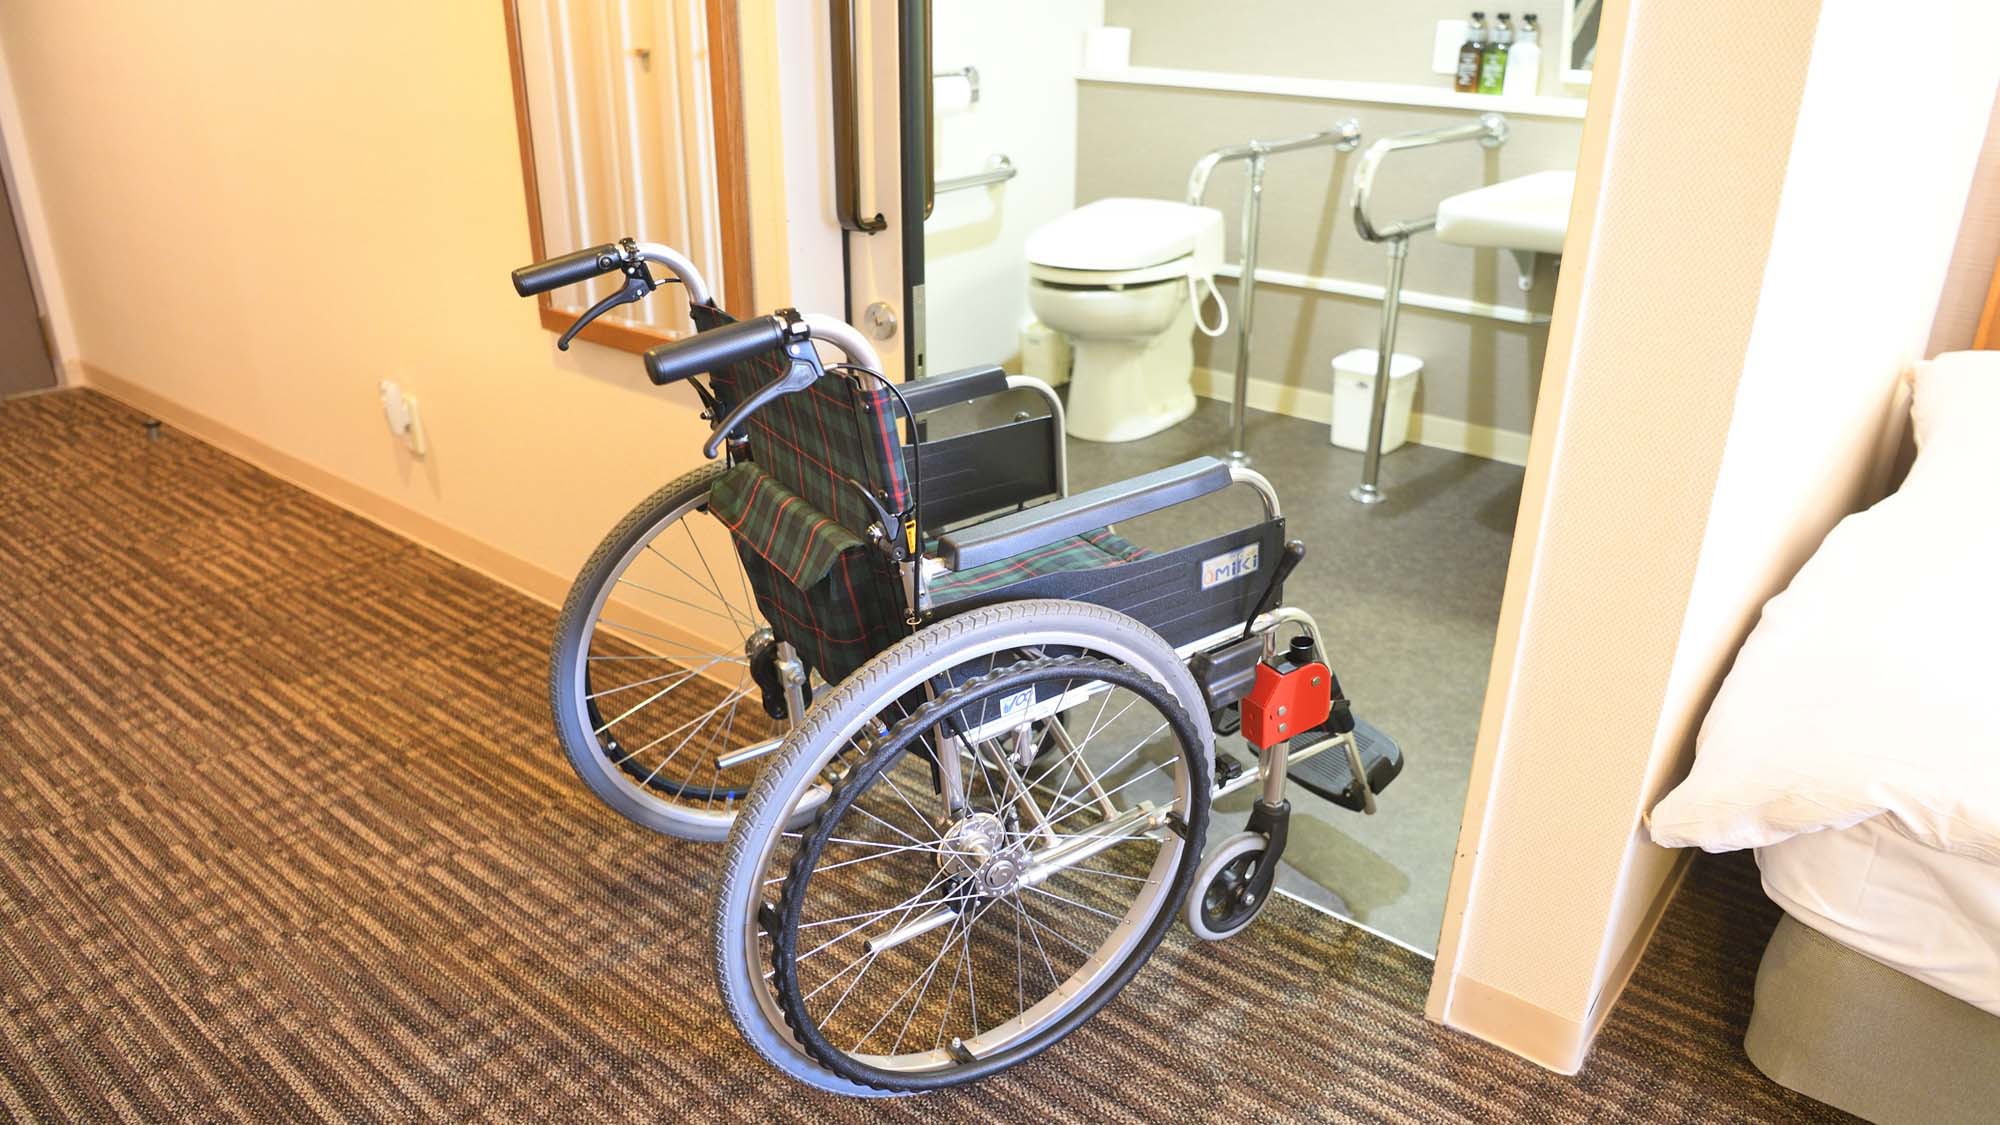 【バリアフリールーム】館内で1室のバリアフリー対応の洋室です。 足腰の不自由な方やご高齢の方、車椅子